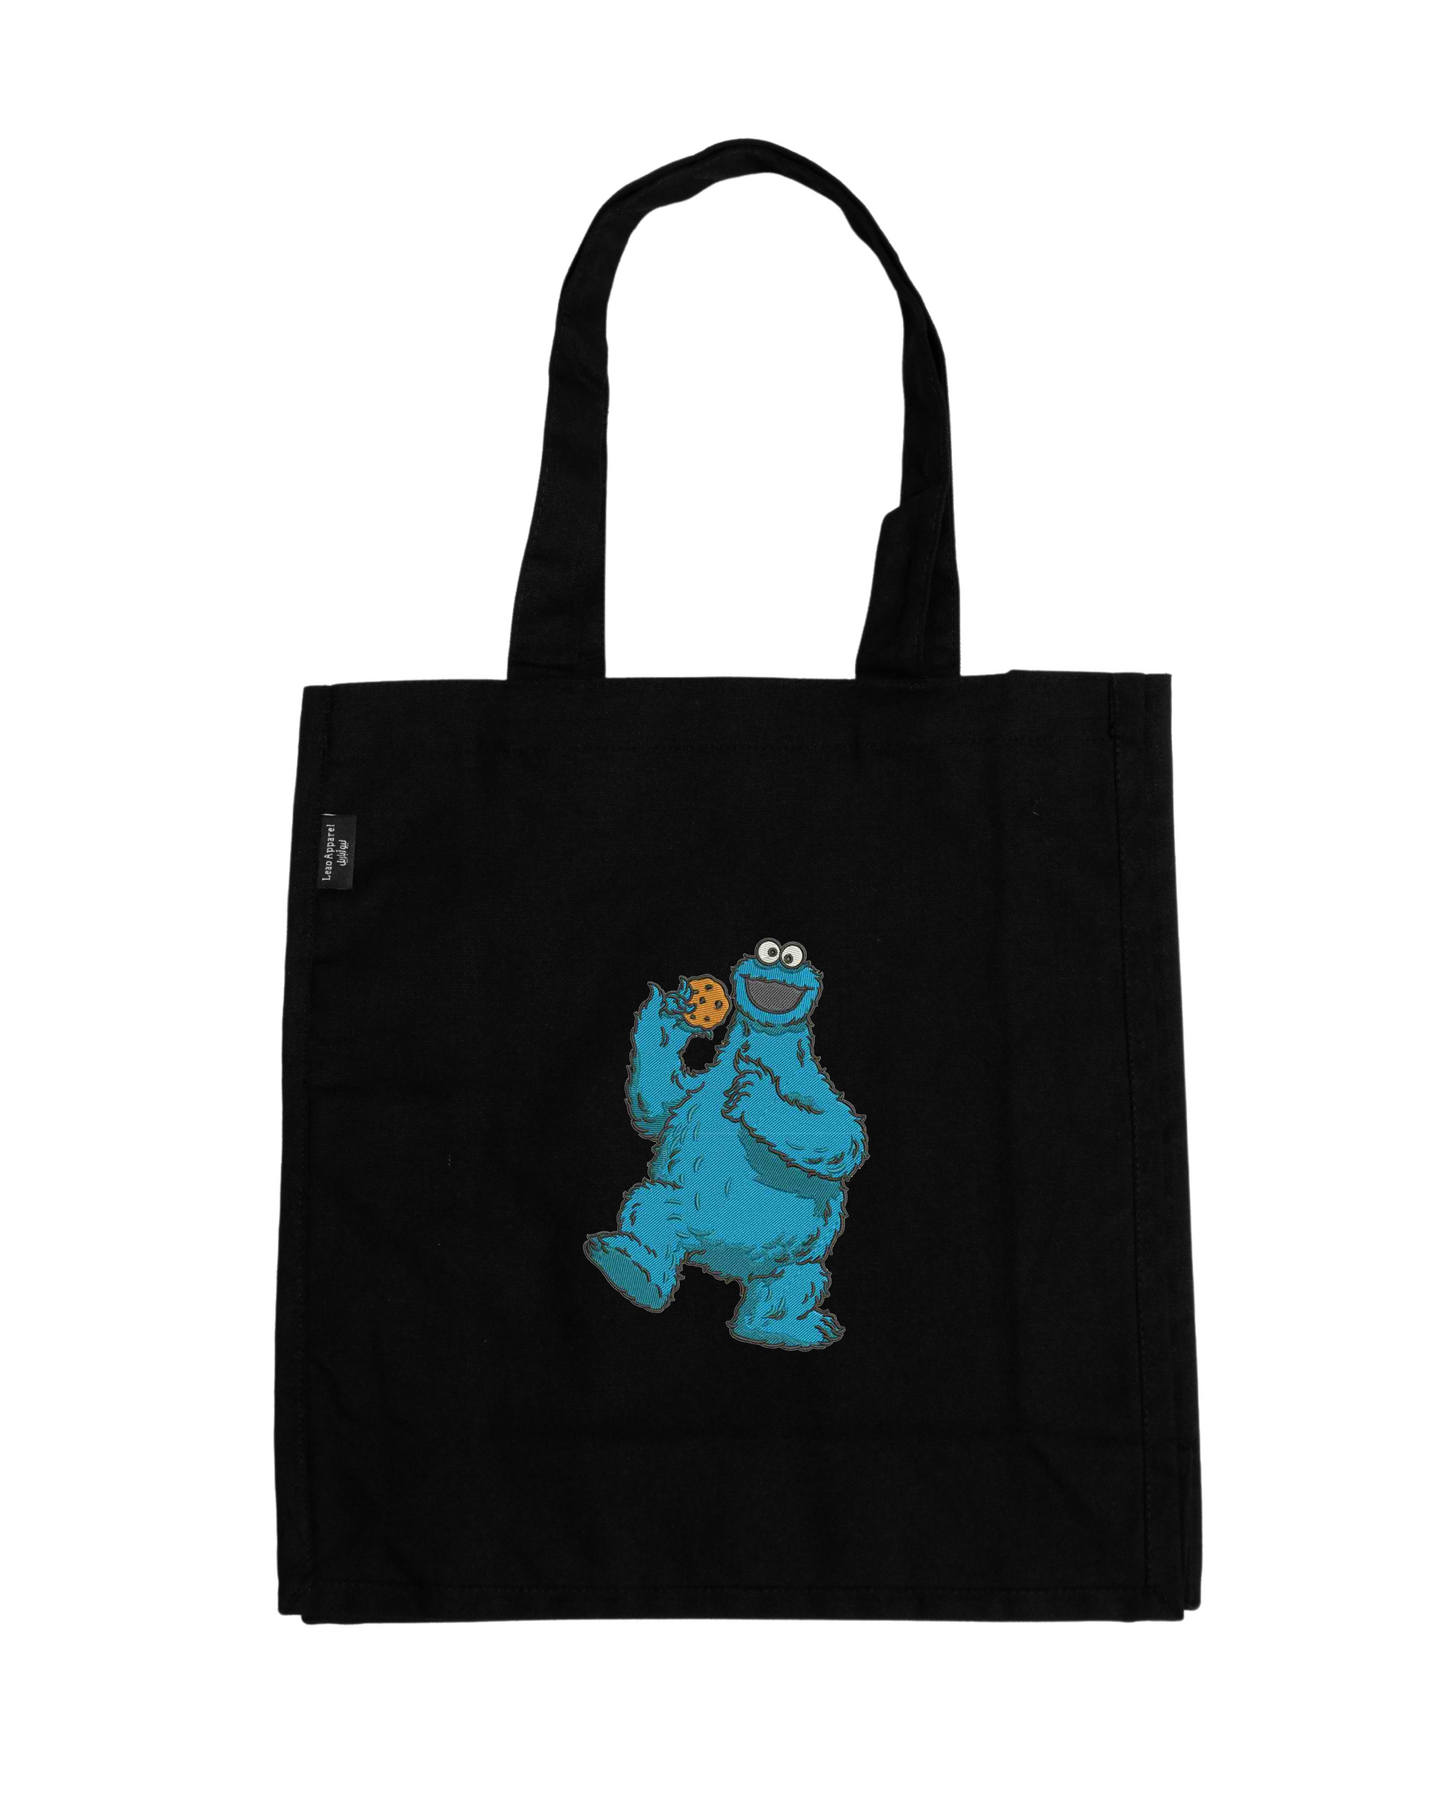 Cookie Monster Tote Bag